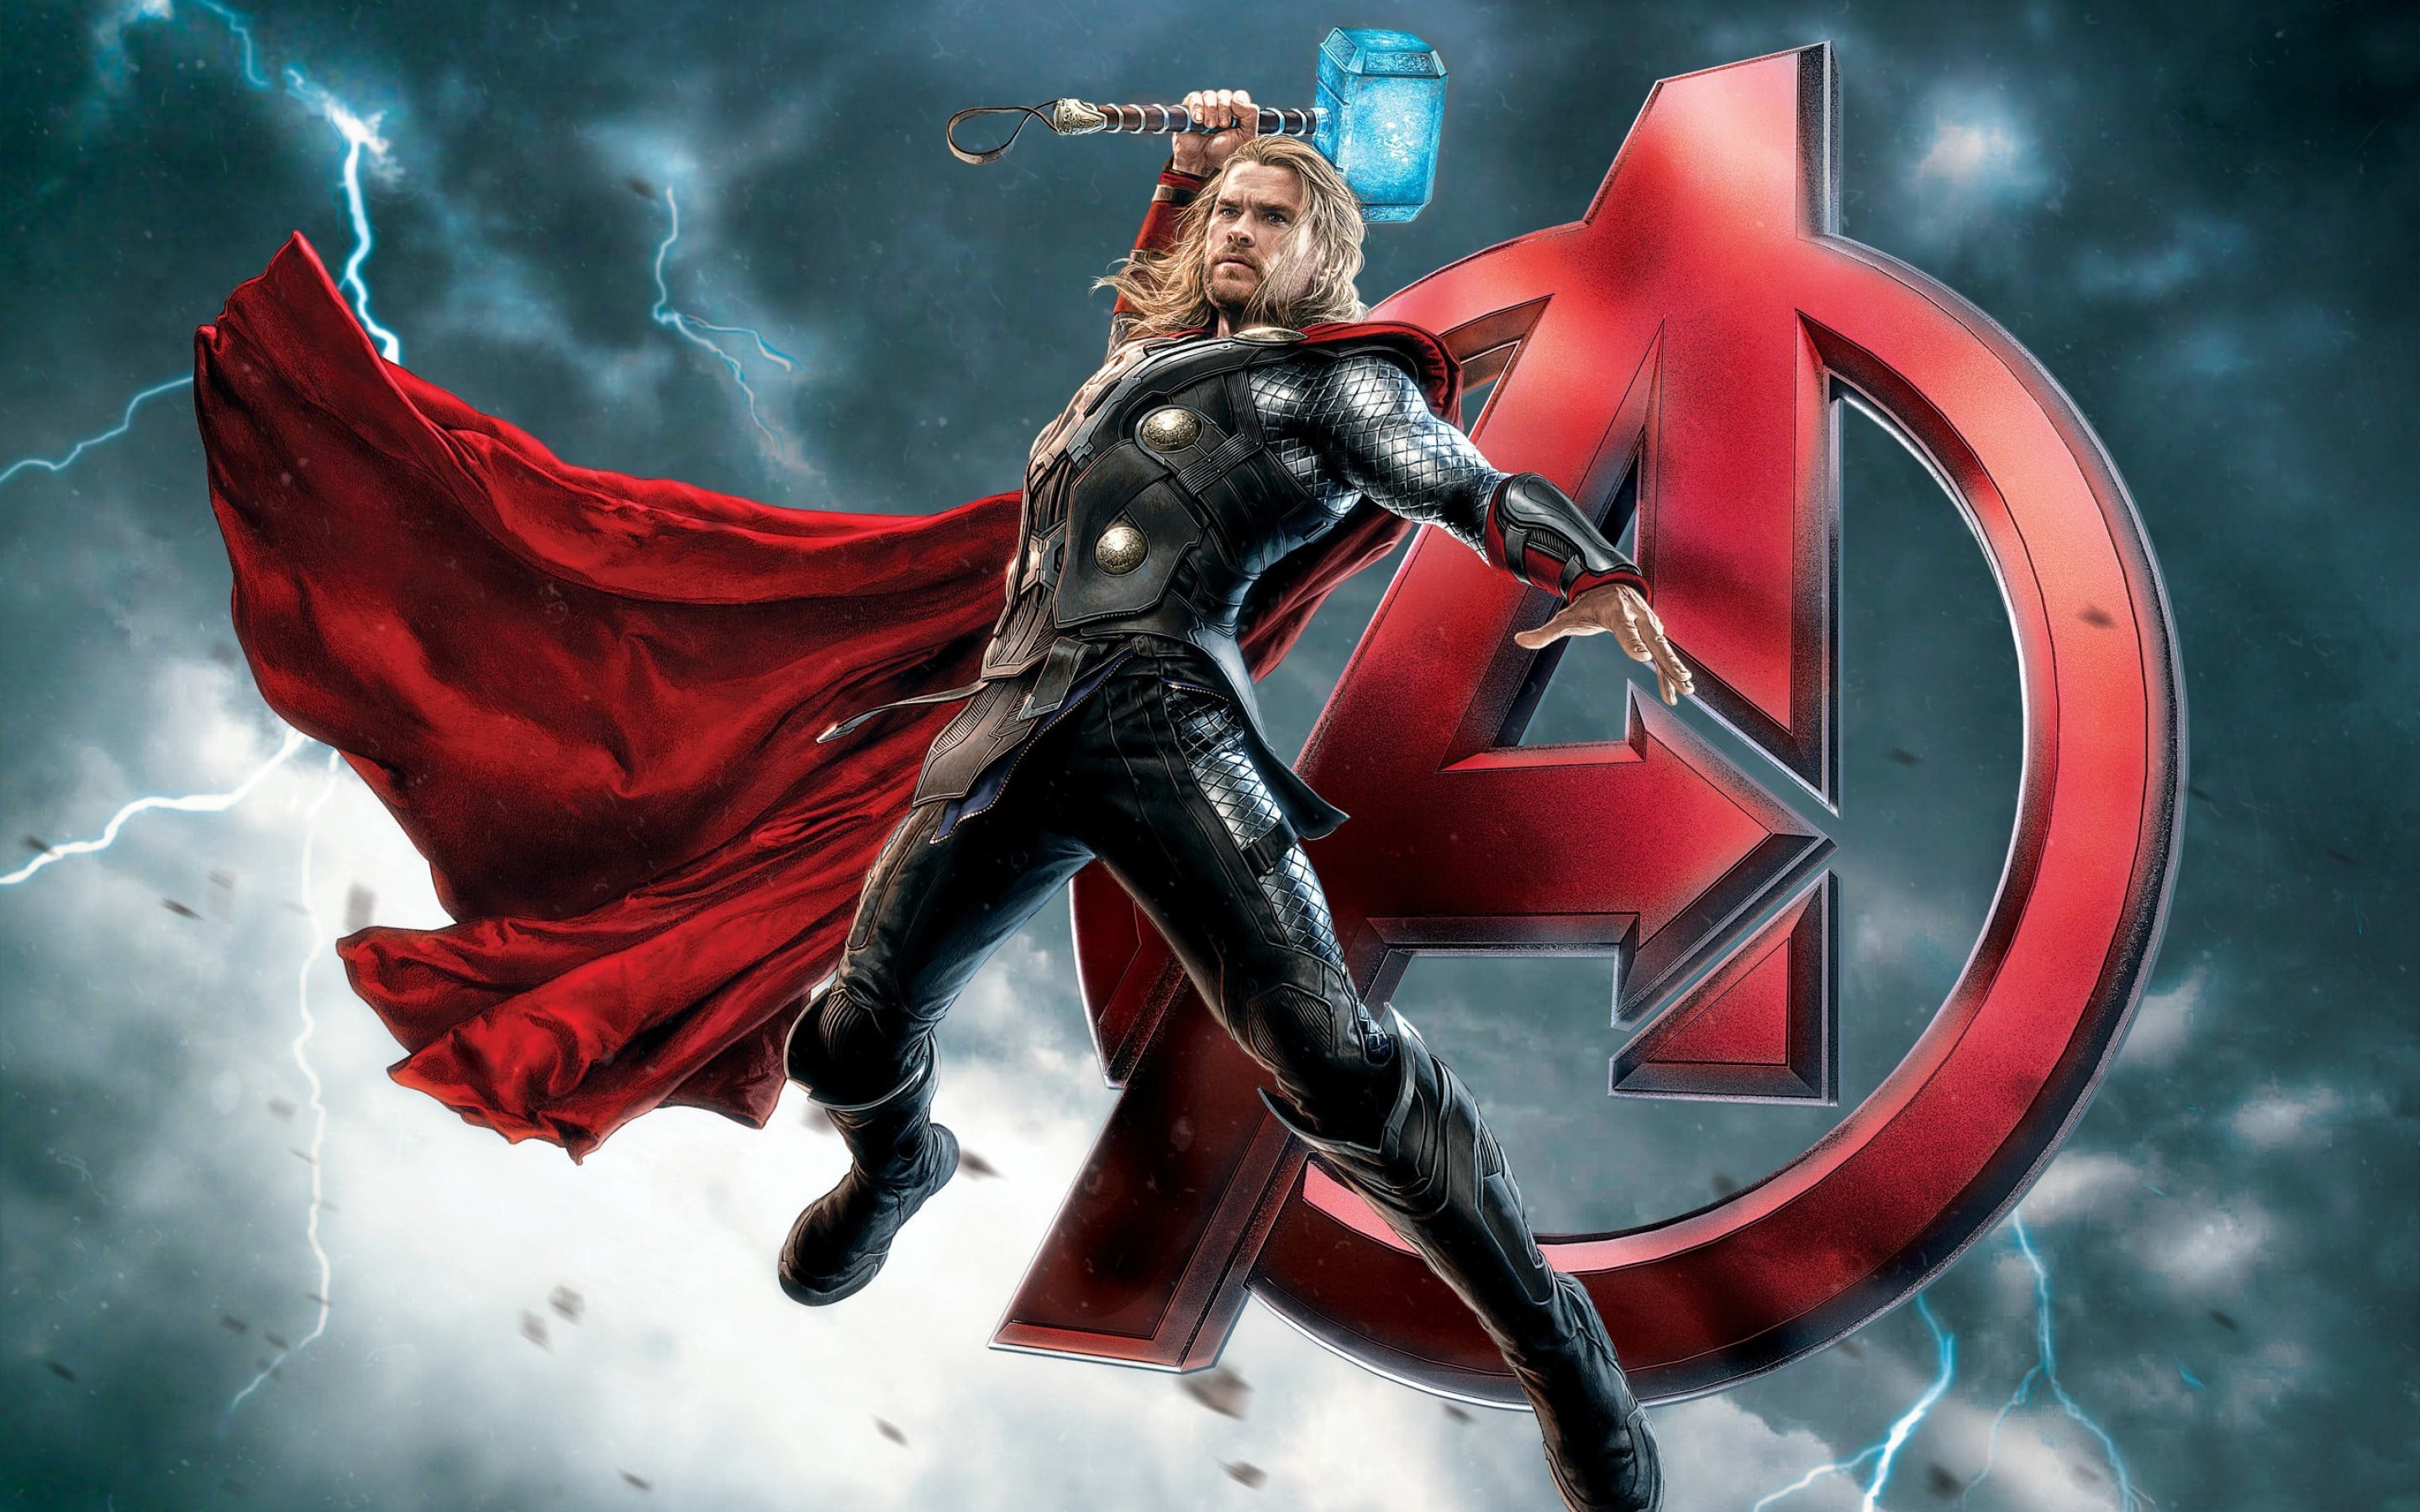 The Avengers Fantasy Warrior Thor Super Hero Poster Ultra Hd 4k Wallpaper 2880×1800